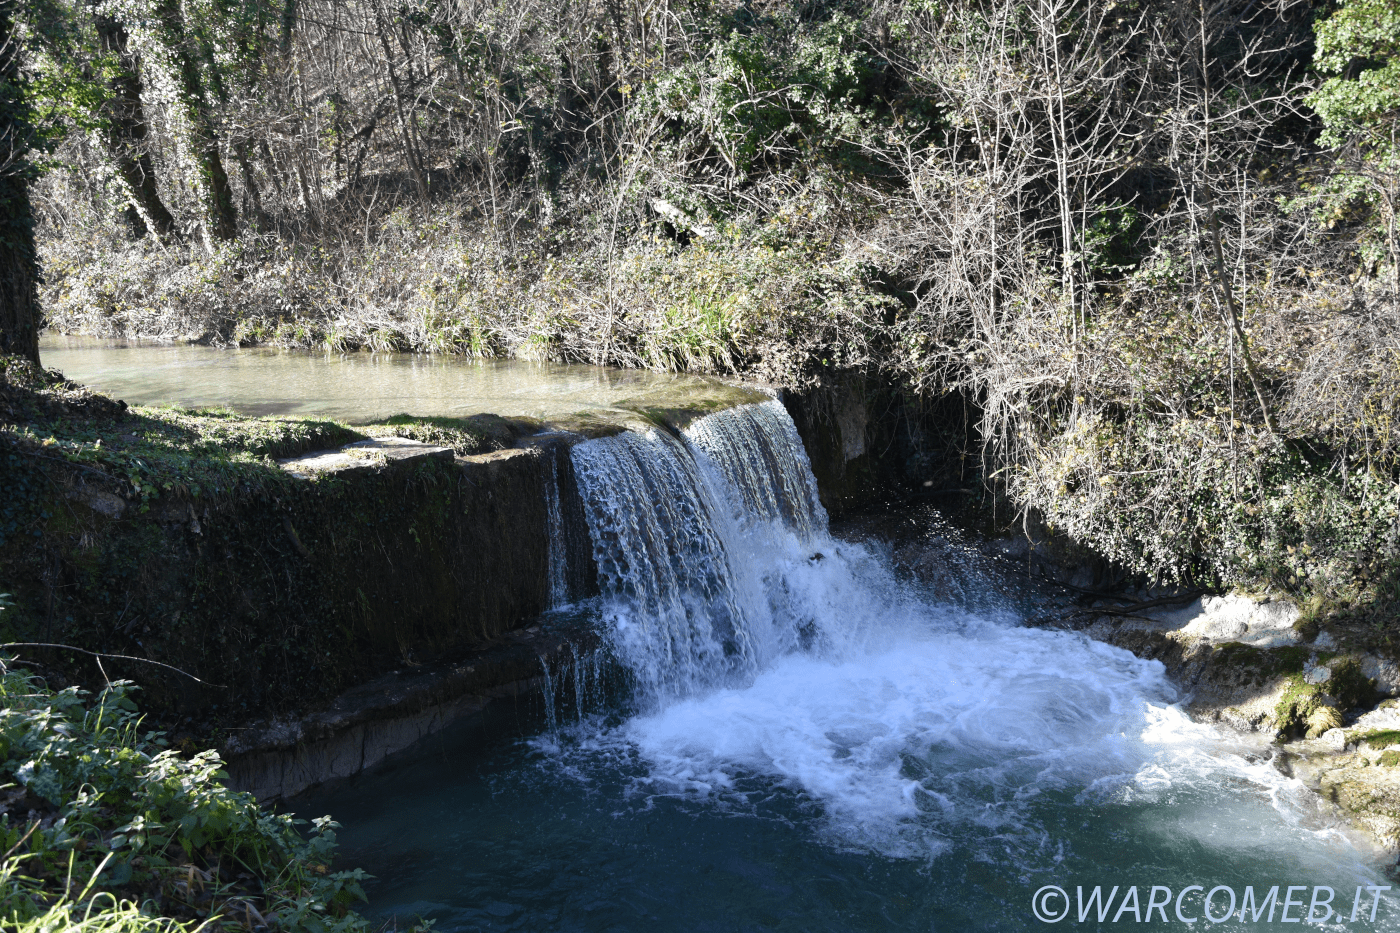 La cascata del fiume Cinisco